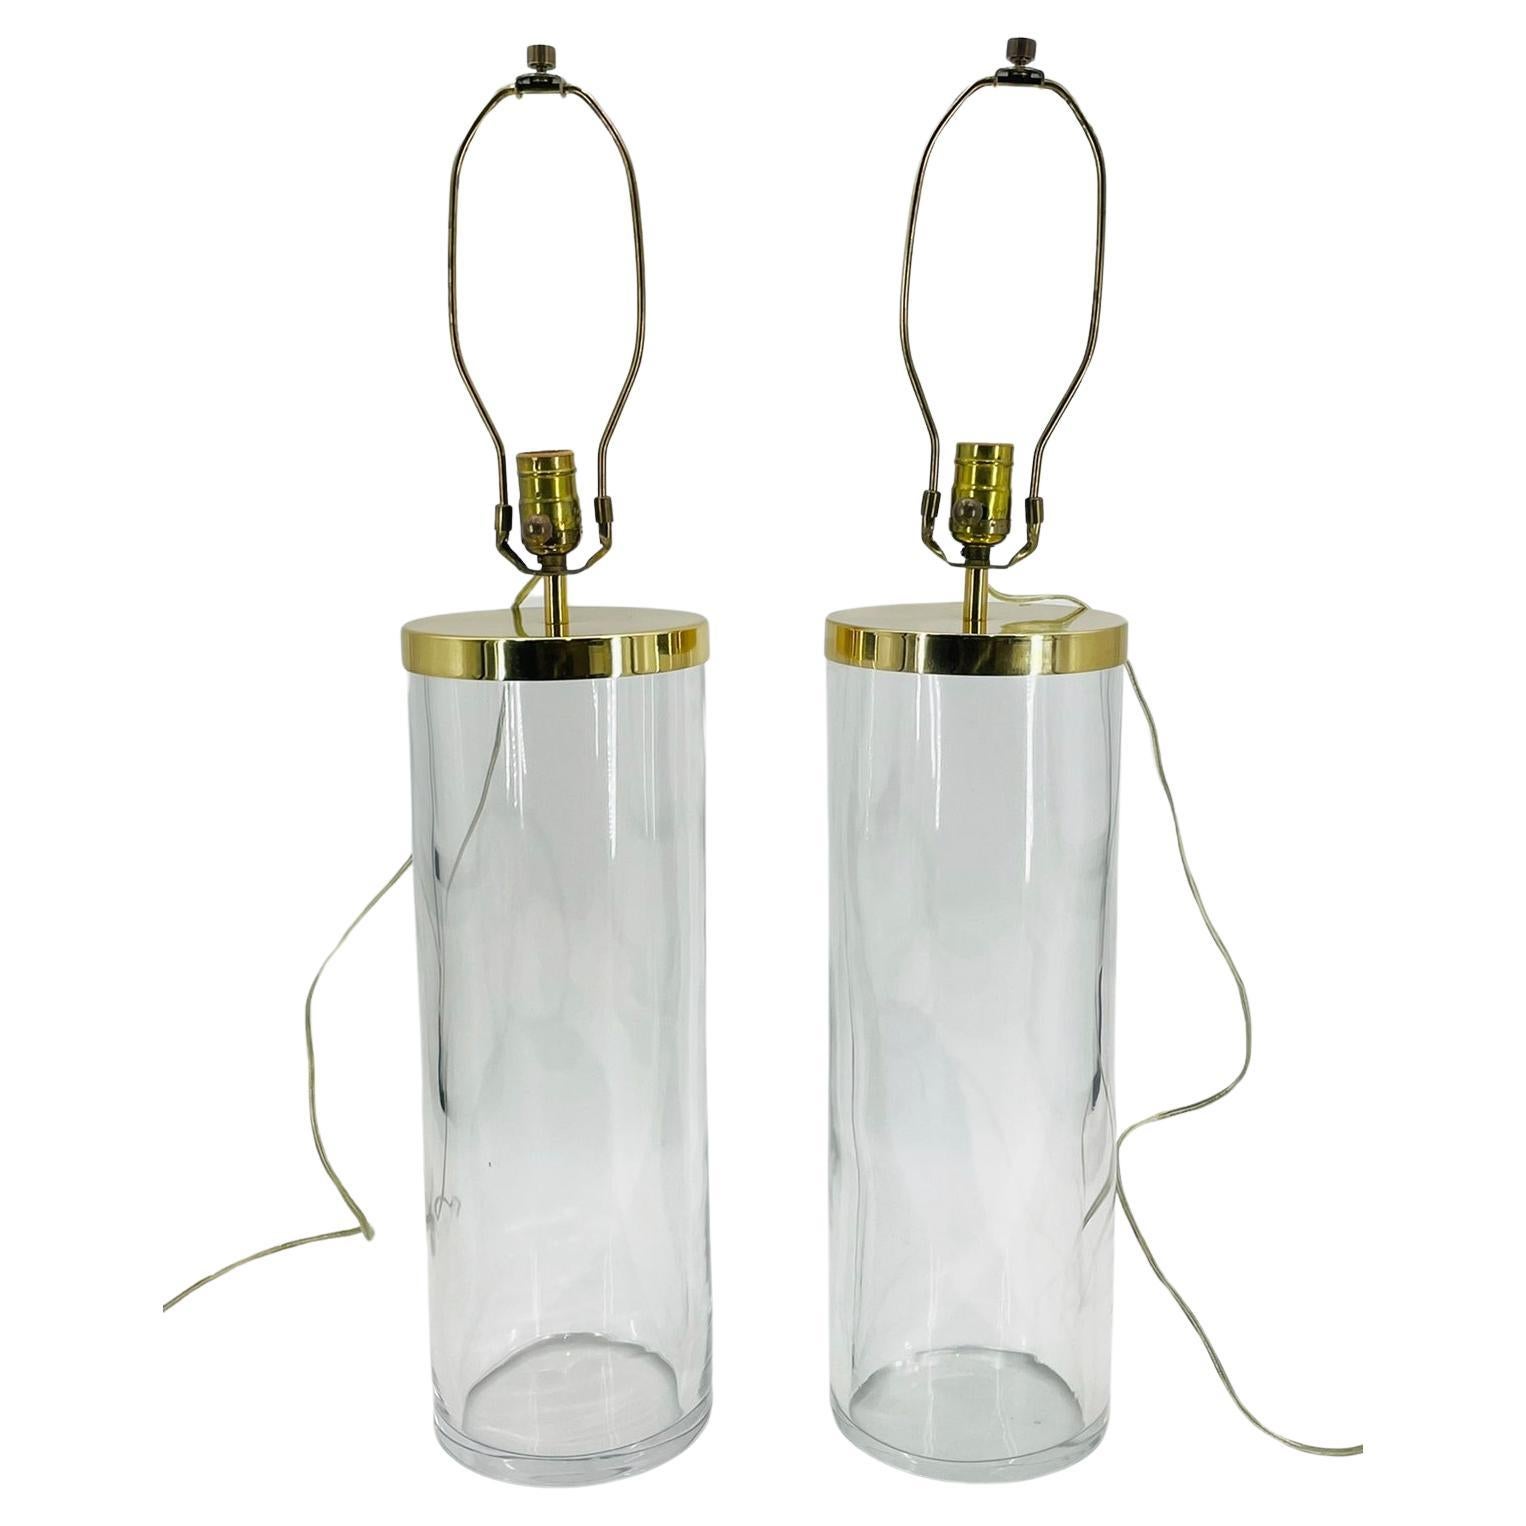 Die Vintage Pair of Glass & Brass Table Lamps von Chapman, USA, stammen aus der mondänen Ära der 1970er Jahre. Diese exquisiten Lampen strahlen zeitlose Eleganz aus und werten mit ihrer tadellosen Handwerkskunst mühelos jeden Raum auf. Jede Leuchte